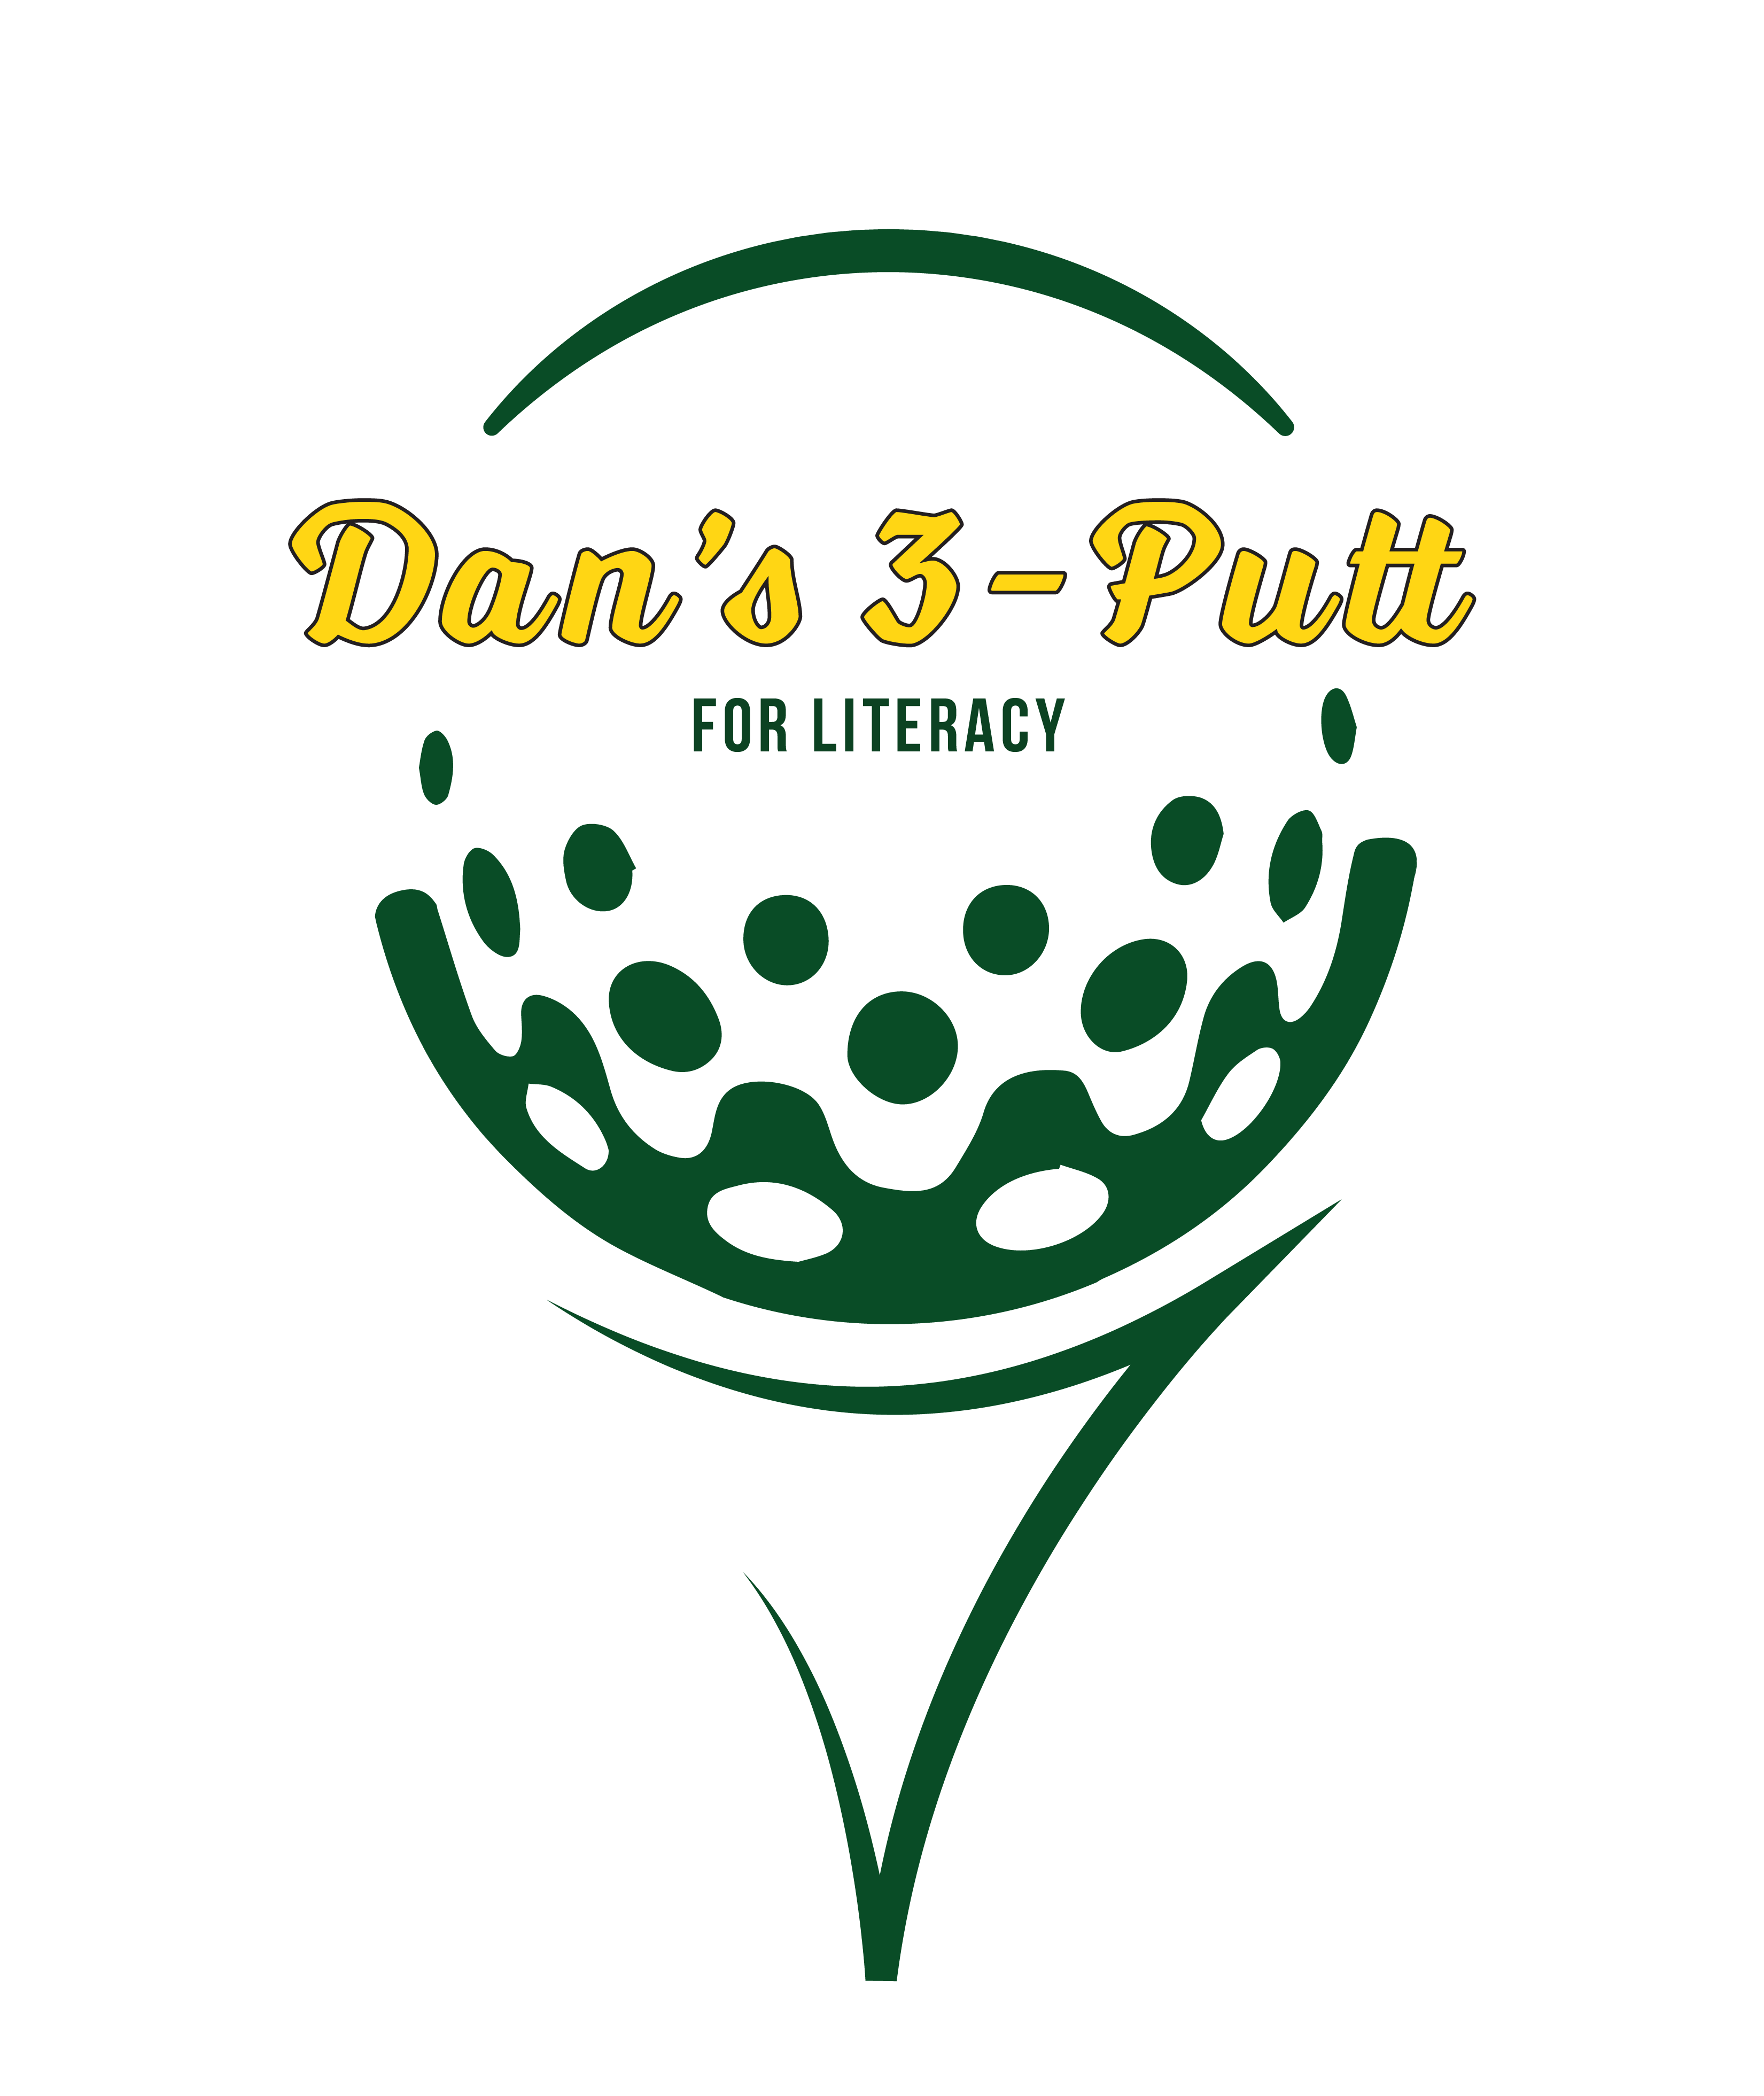 Dan's 3-Putt for Literacy logo